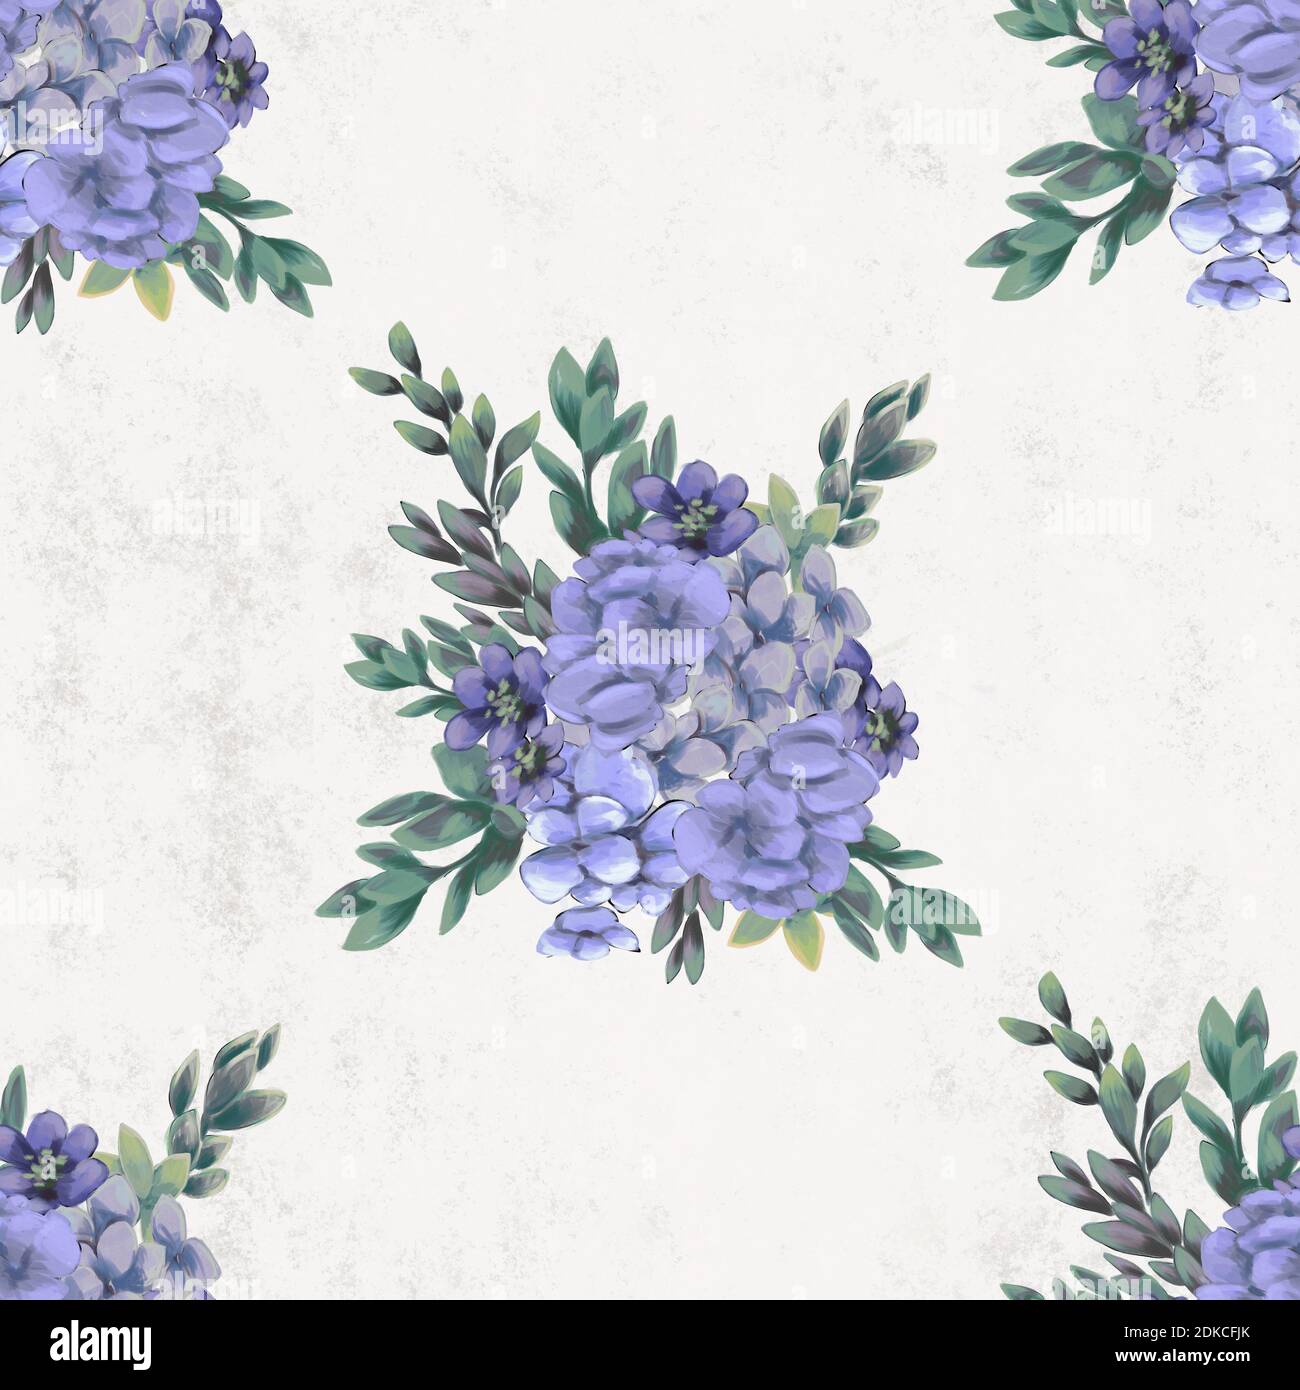 L'Aquarelle transparente floral pattern. Fleurs peintes à la main, modèle de carte de vœux ou du papier d'emballage Banque D'Images